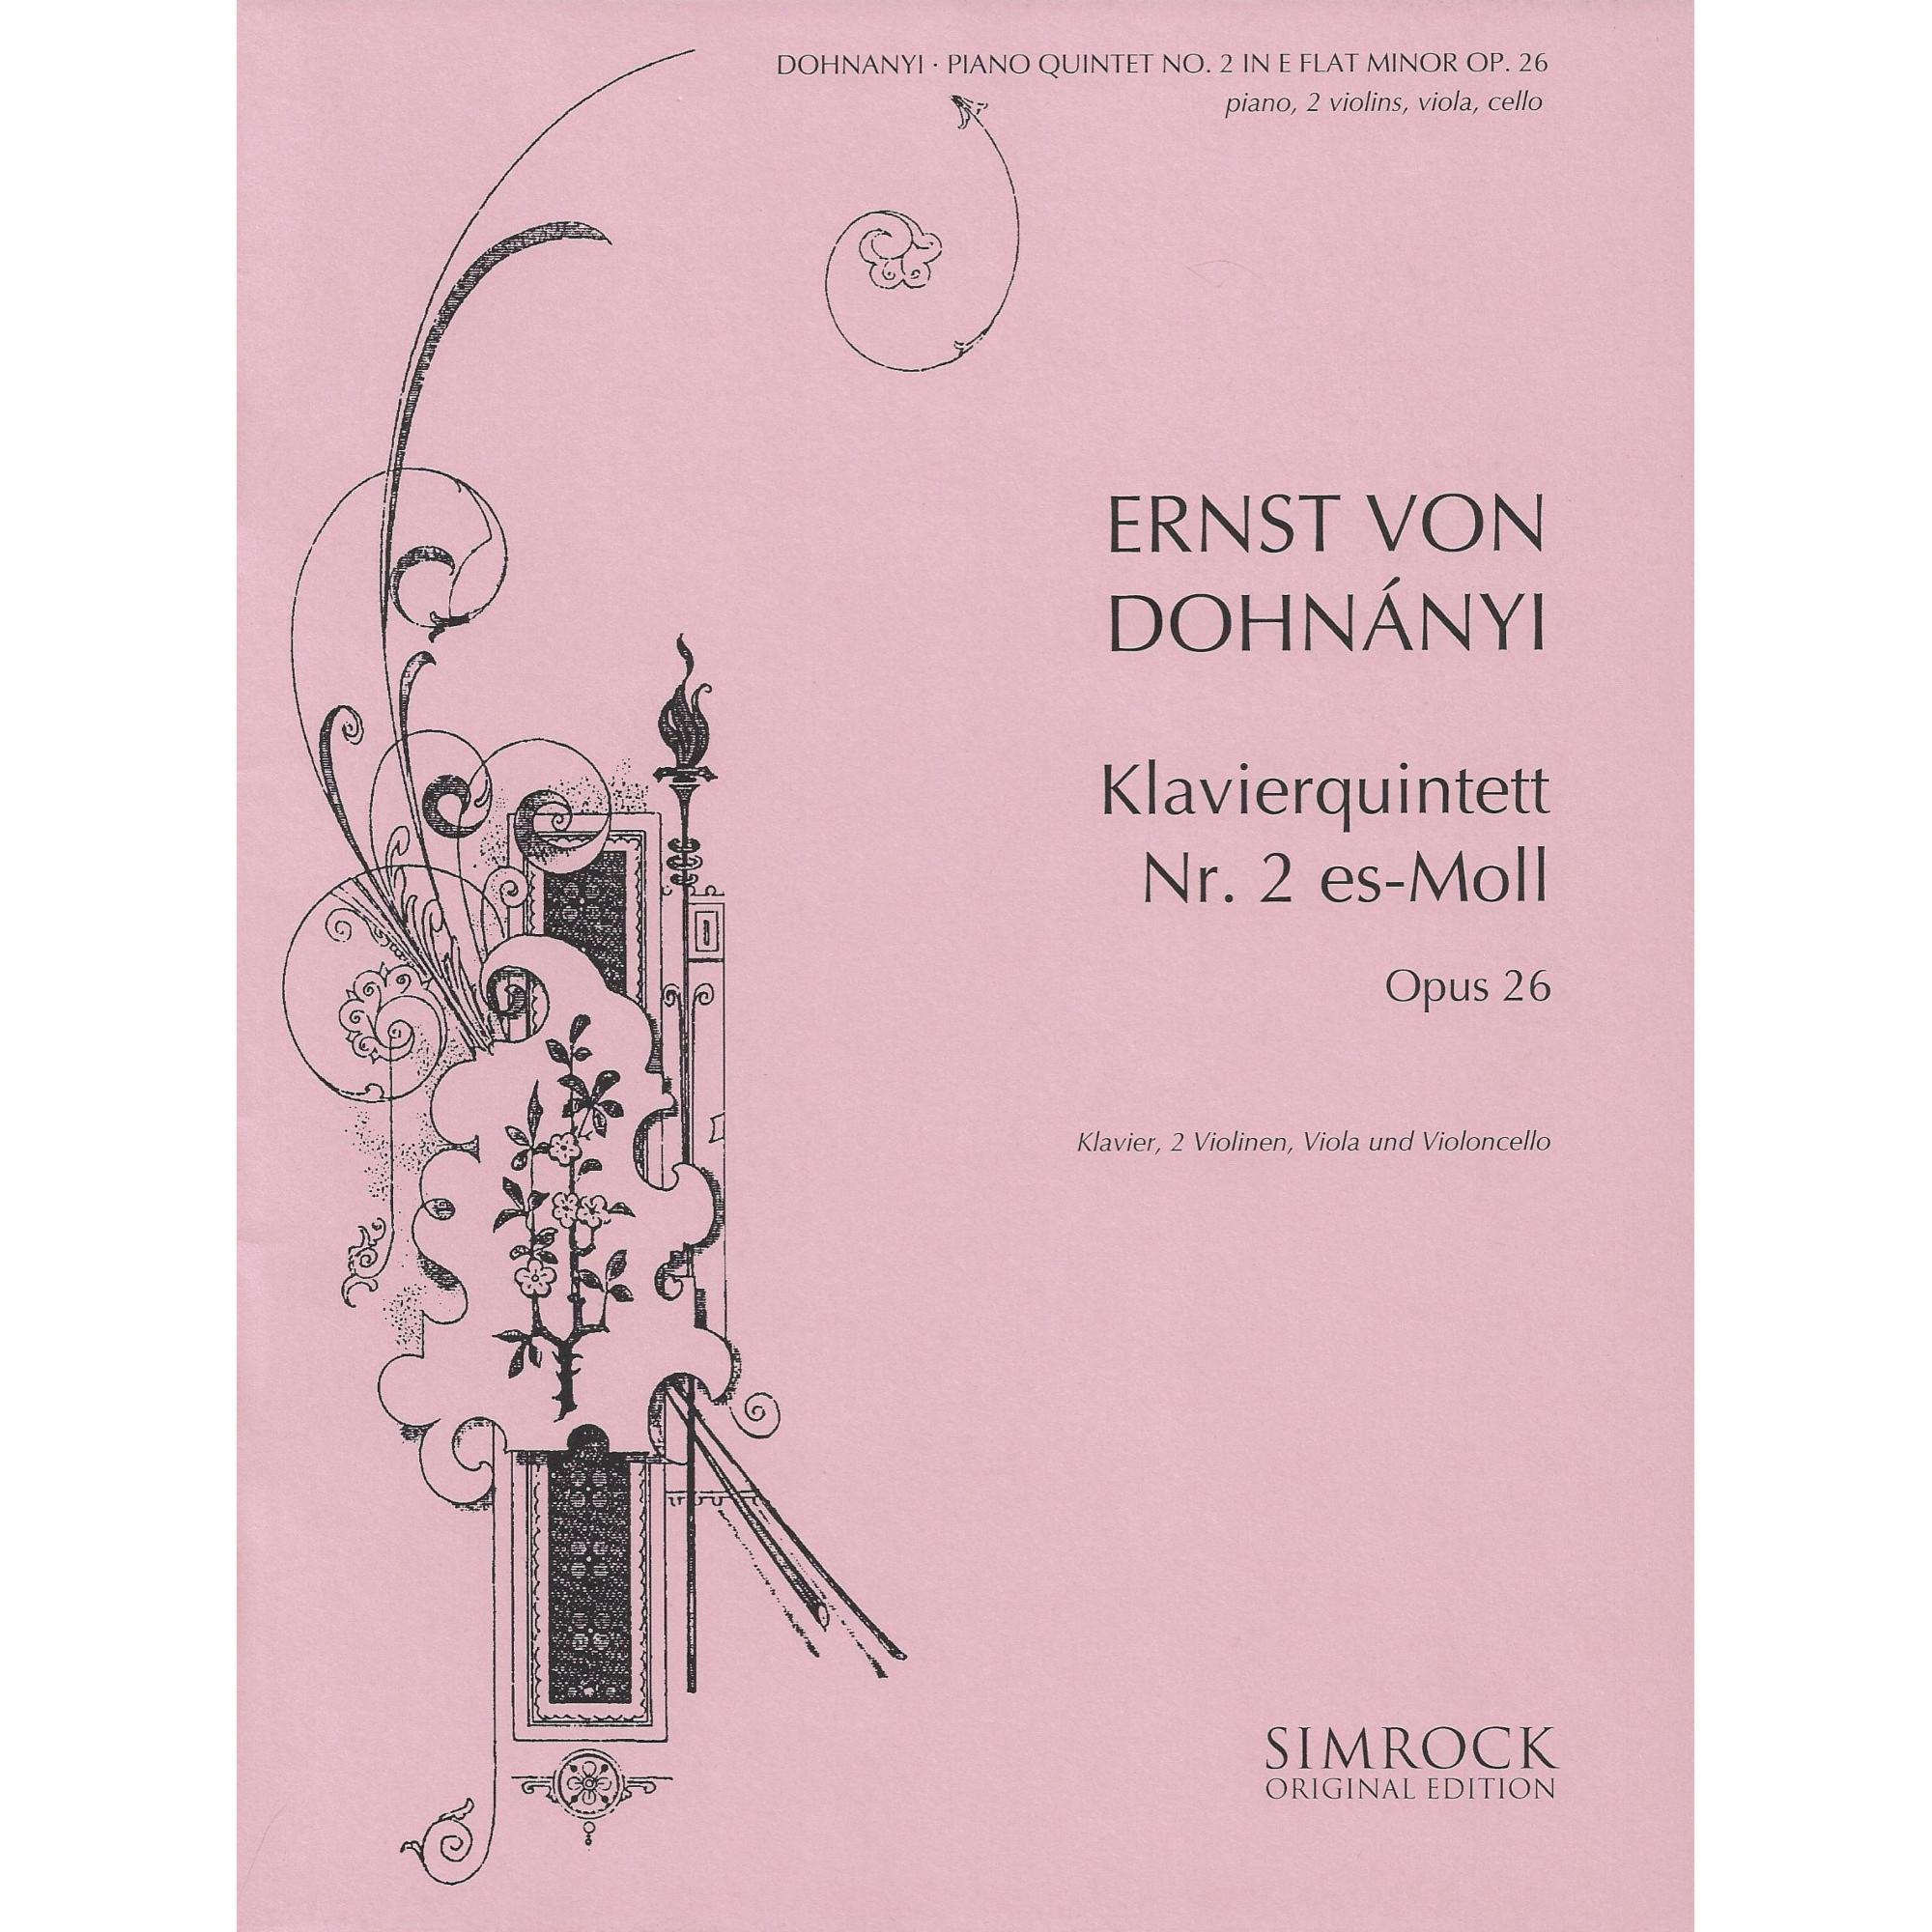 Dohnanyi -- Piano Quintet No. 2 in E-flat Minor, Op. 26